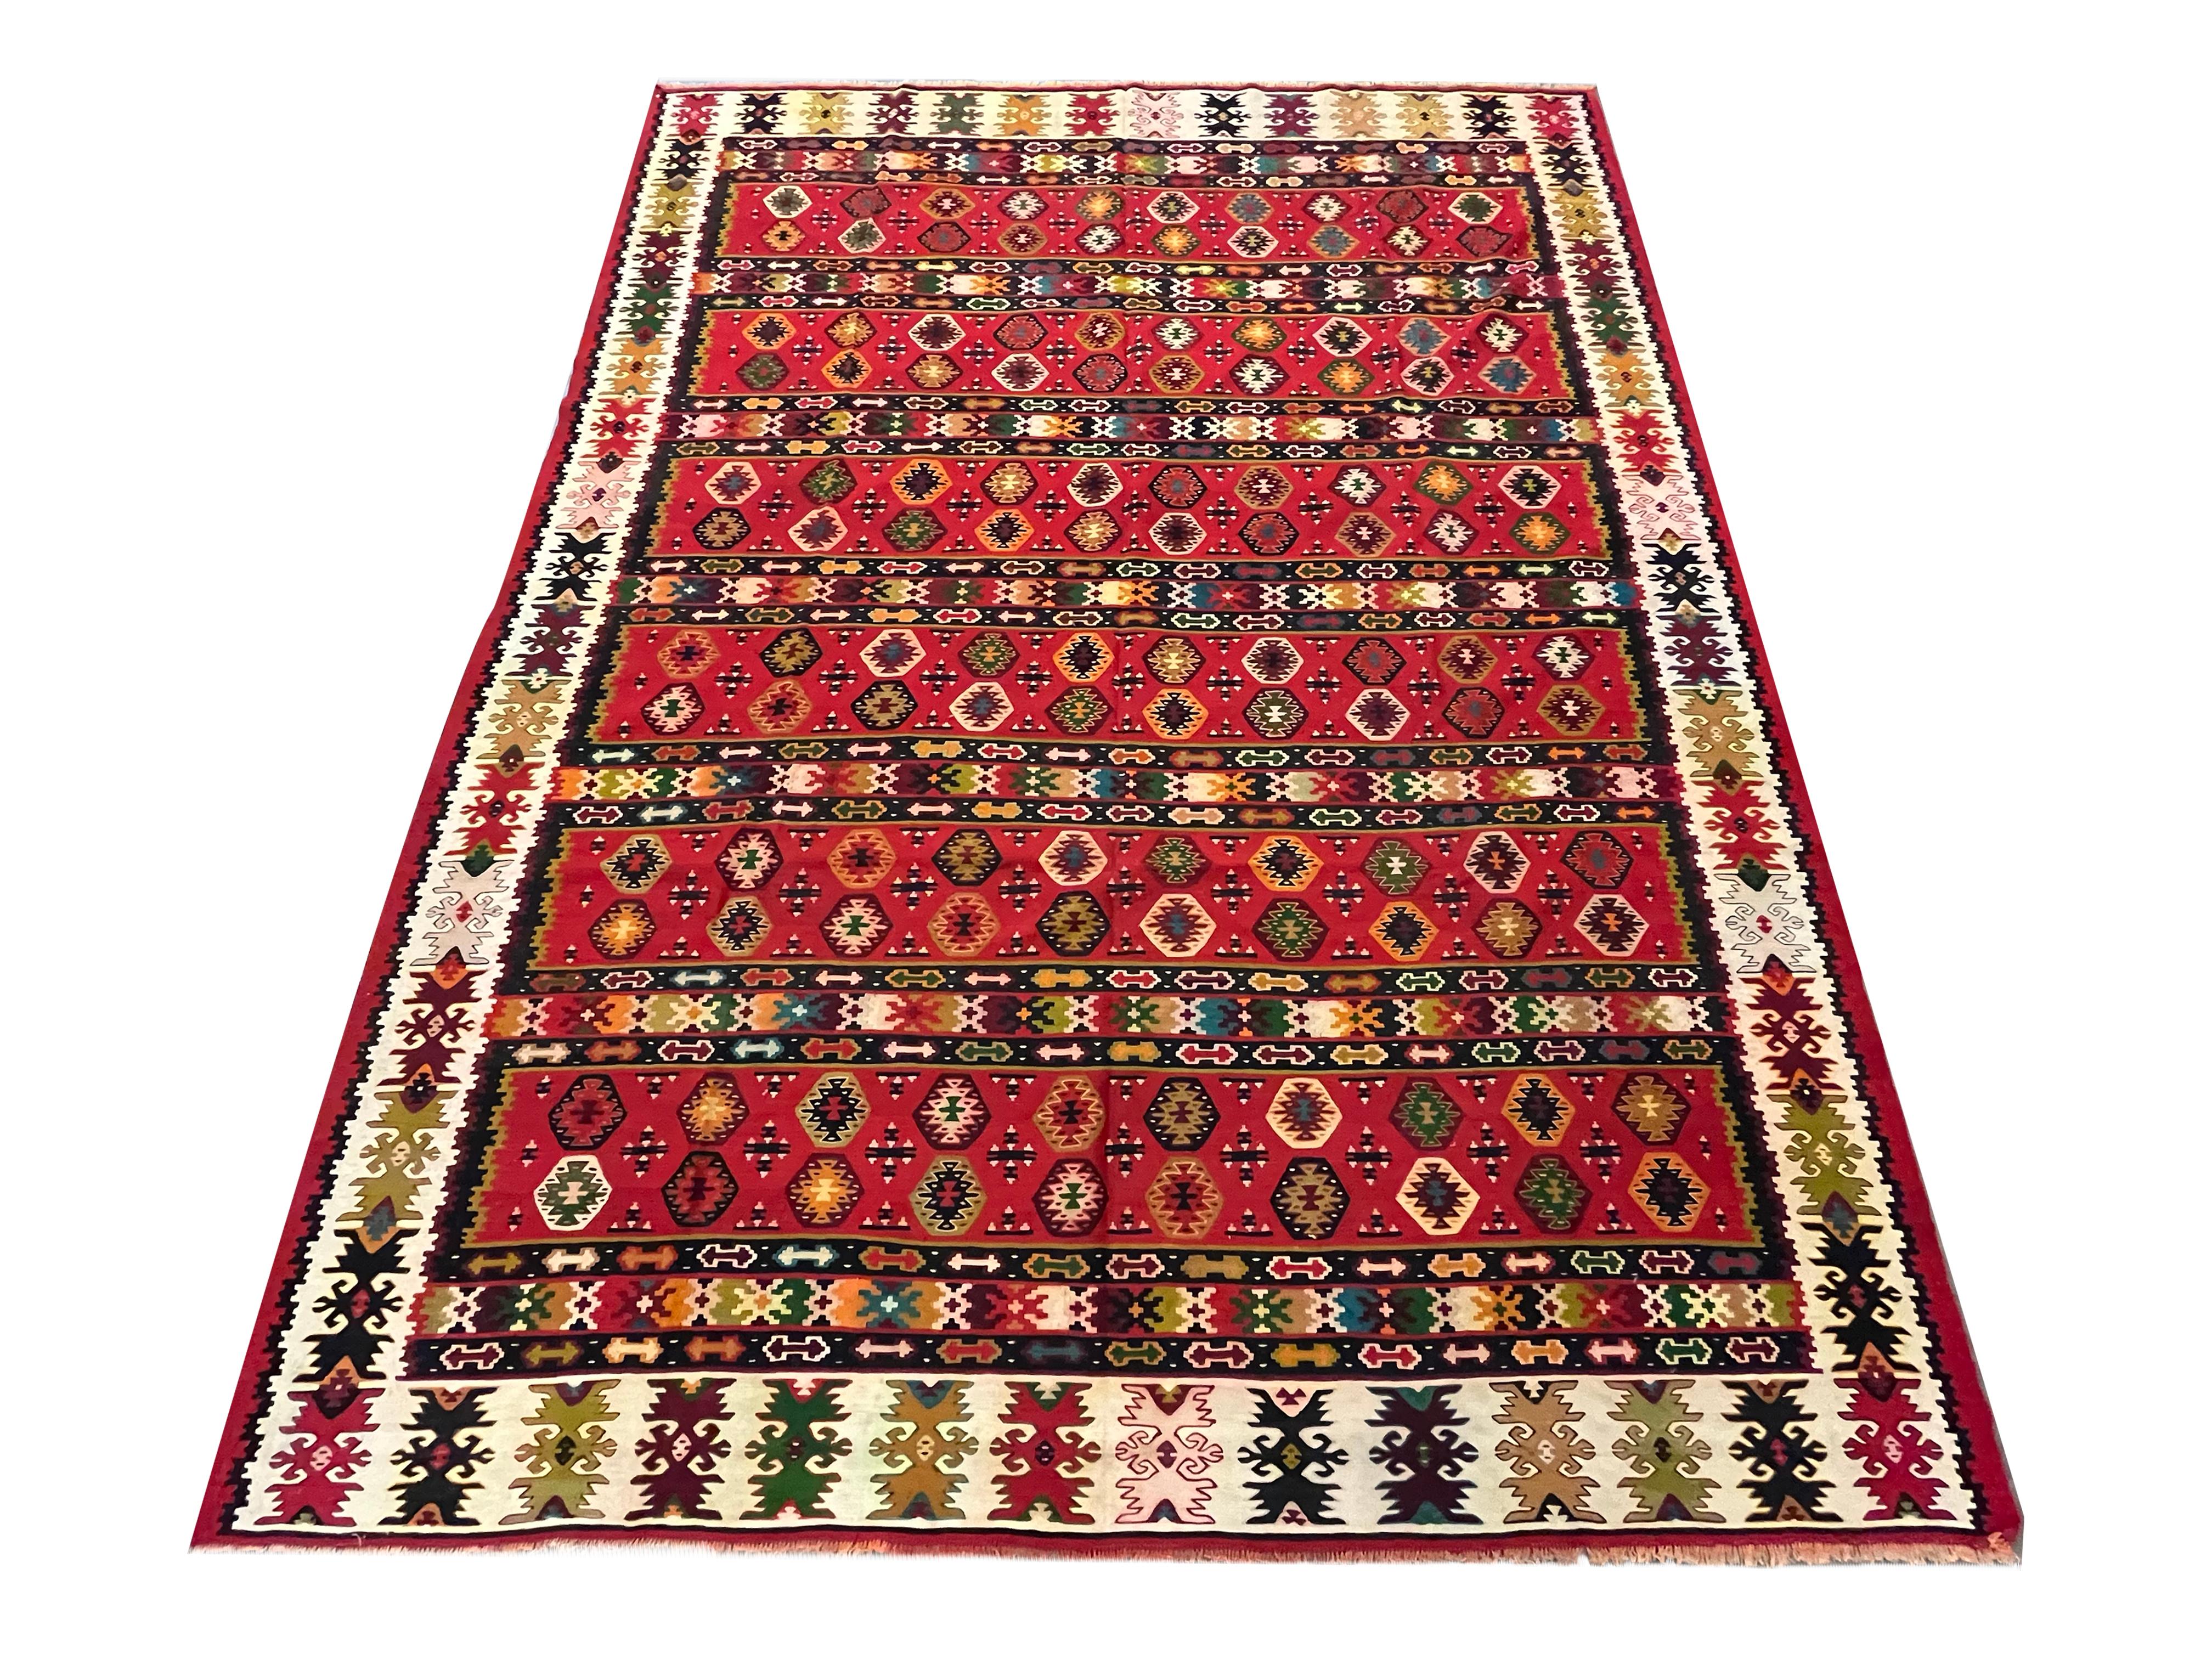 Dieser kräftige rote Kelim ist ein traditioneller, von Hand gewebter Flachgewebe-Teppich aus der Zeit um 1910. Das Design zeigt ein geometrisches Muster, das mit kräftigen Akzenten in Schwarz, Orange, Grün und verschiedenen anderen Farben auf einem